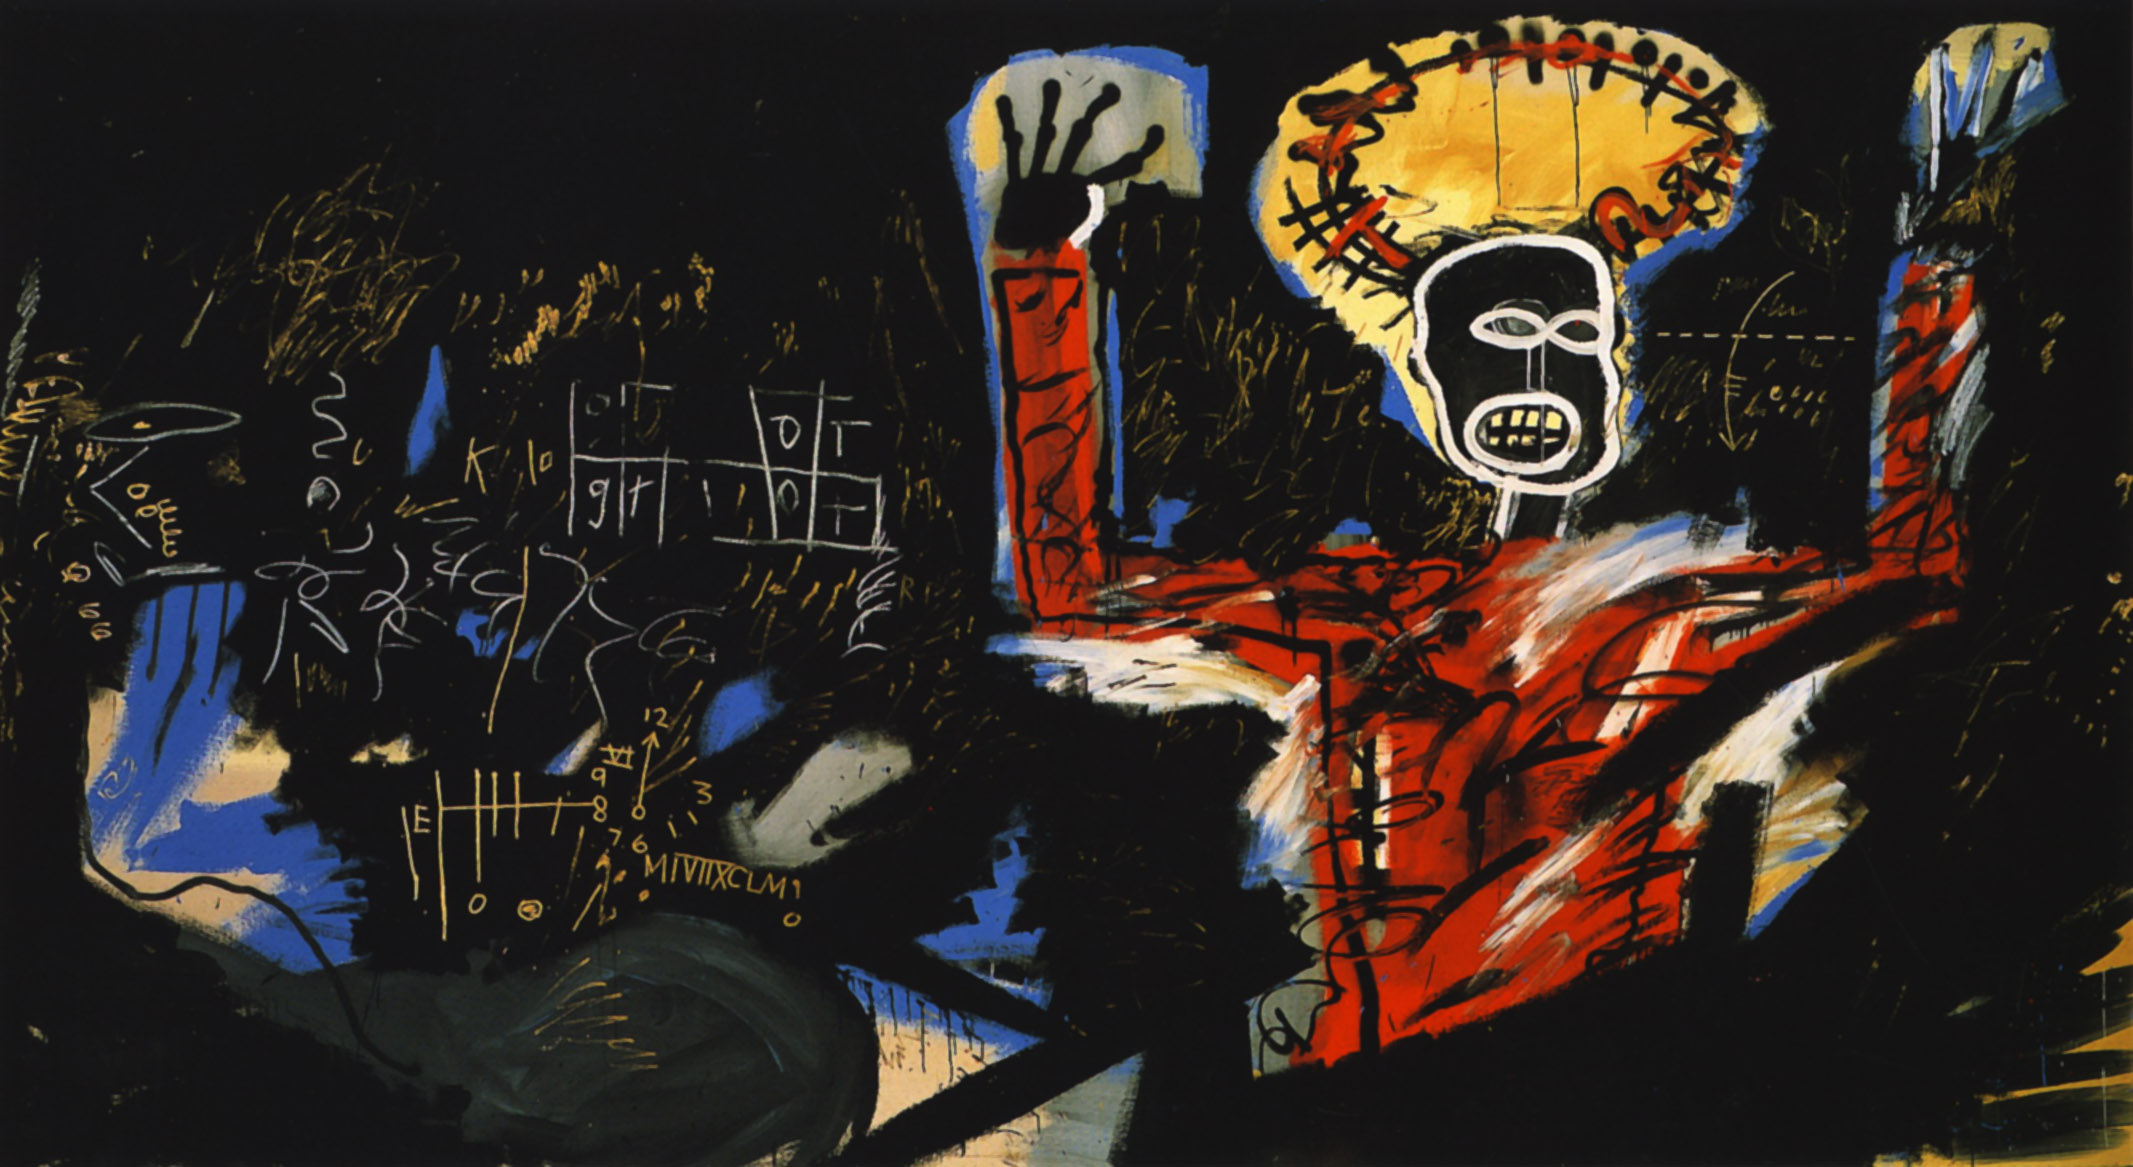 Lucro I by Jean-Michel Basquiat - 1982 coleção privada